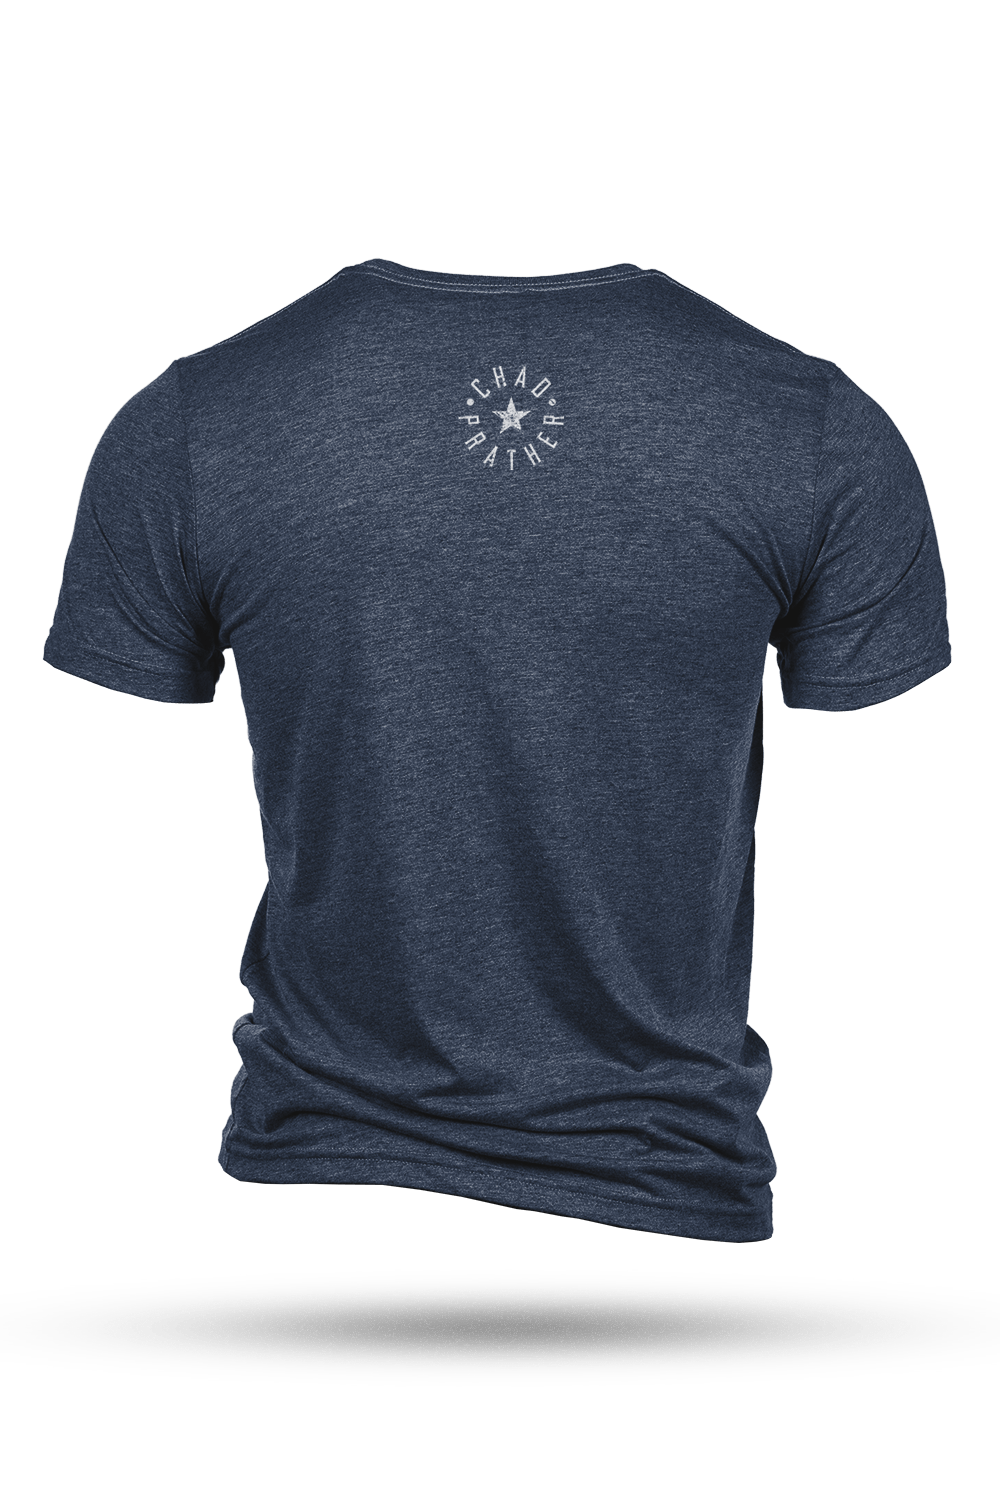 Men's Tri-Blend T-Shirt - Chad Prather - 76 Forever - Nine Line Apparel